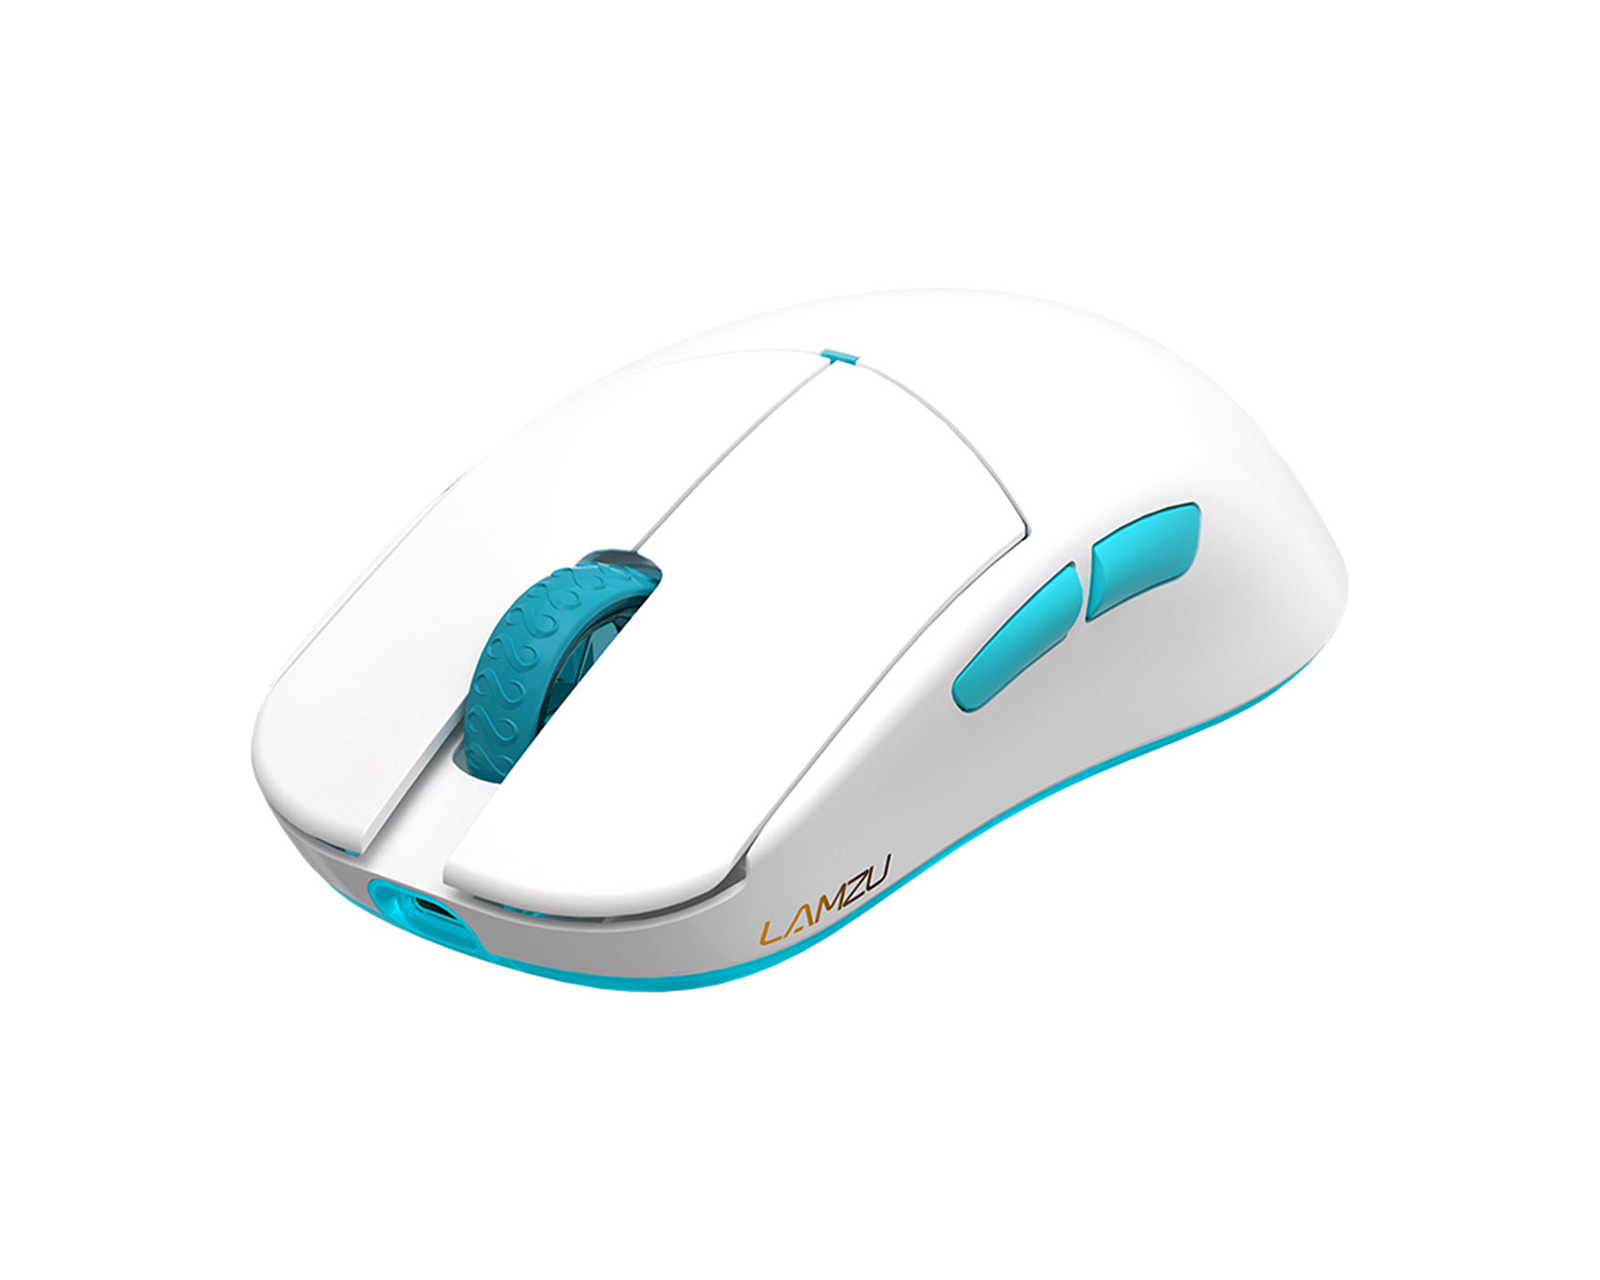 Atlantis OG V2 Wireless Superlight Gaming Mouse - White